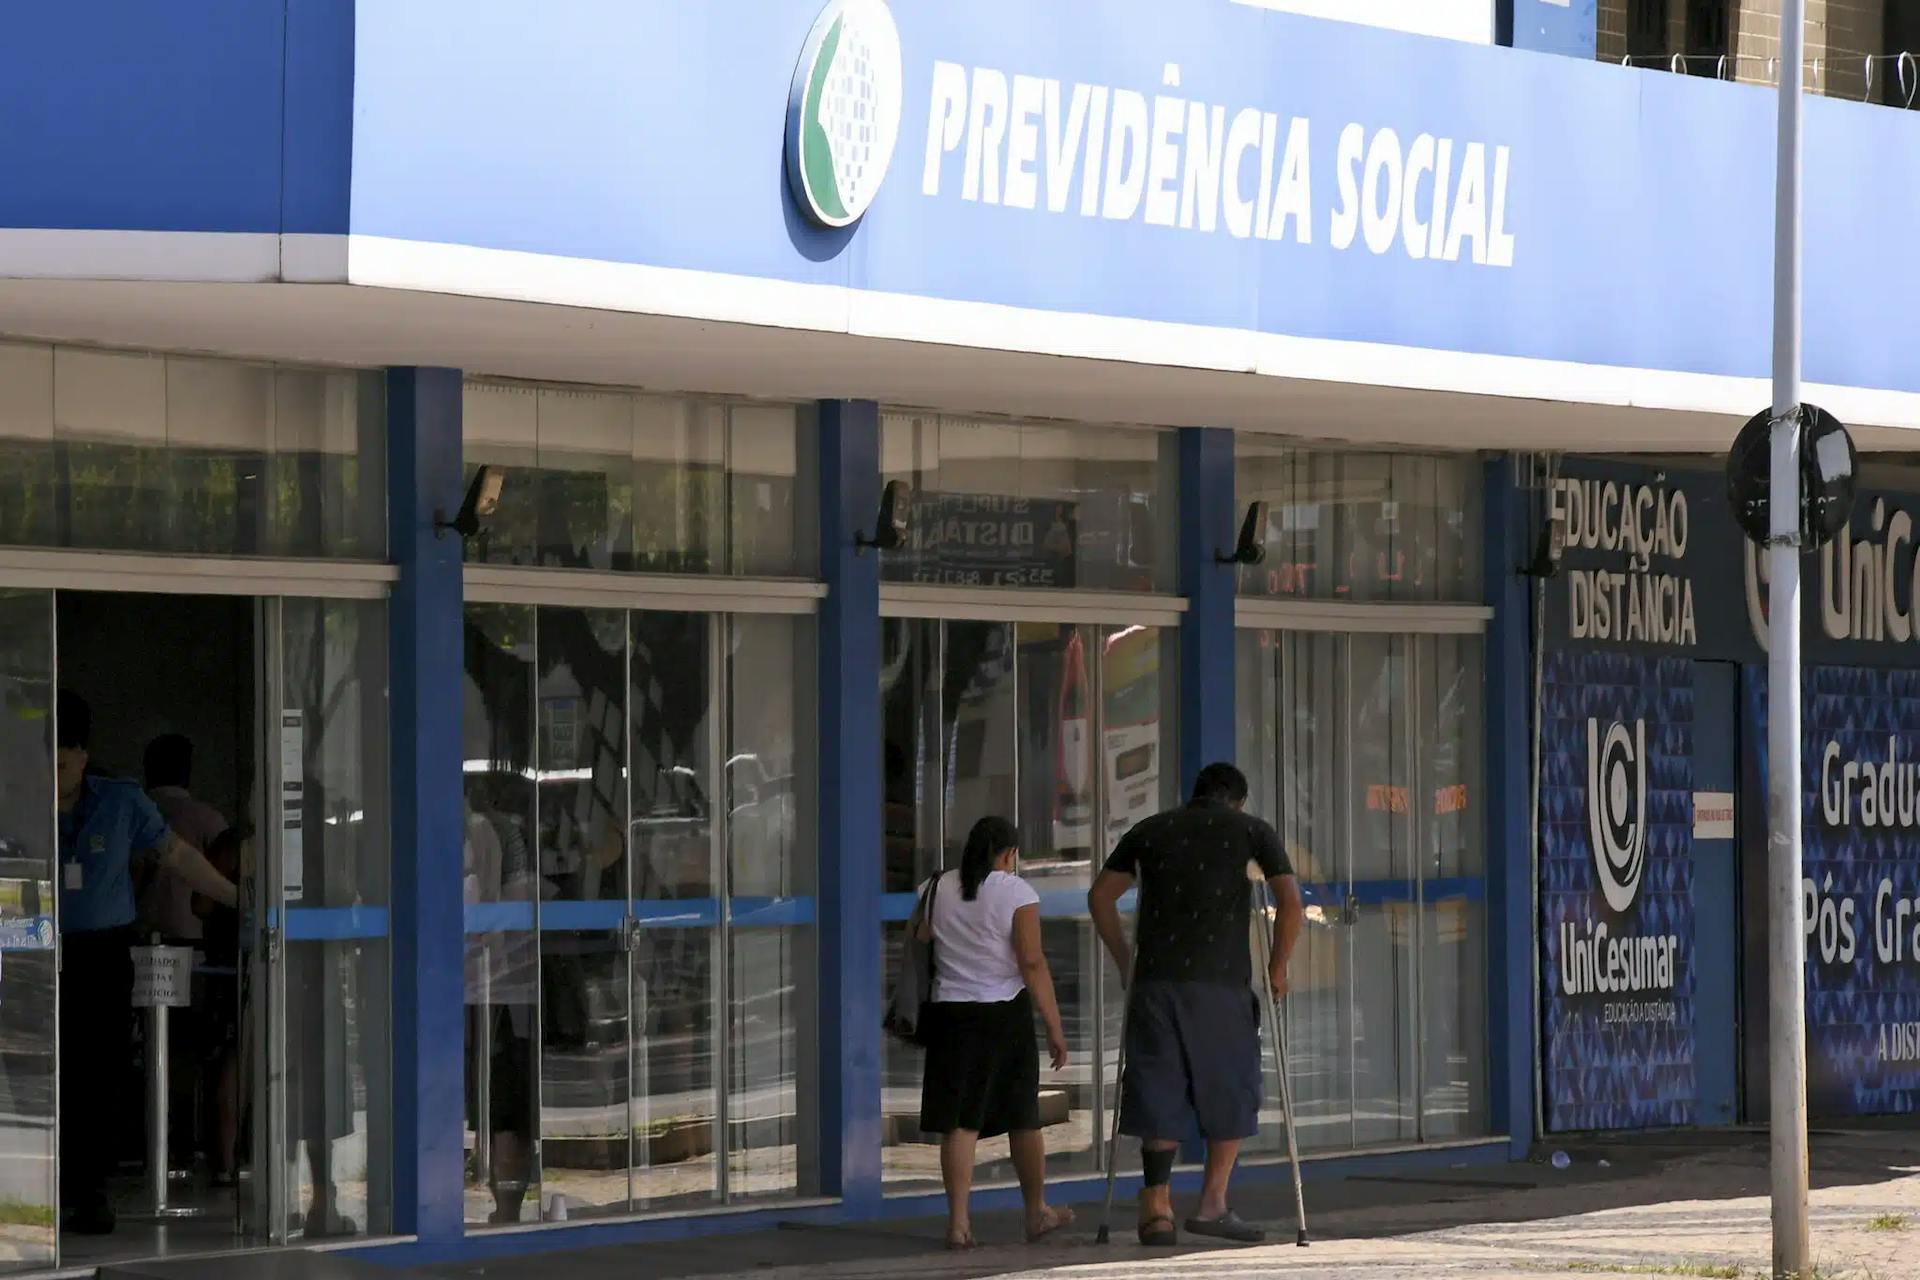 Teleperícia: exames em locais sem perito começam a ser agendados